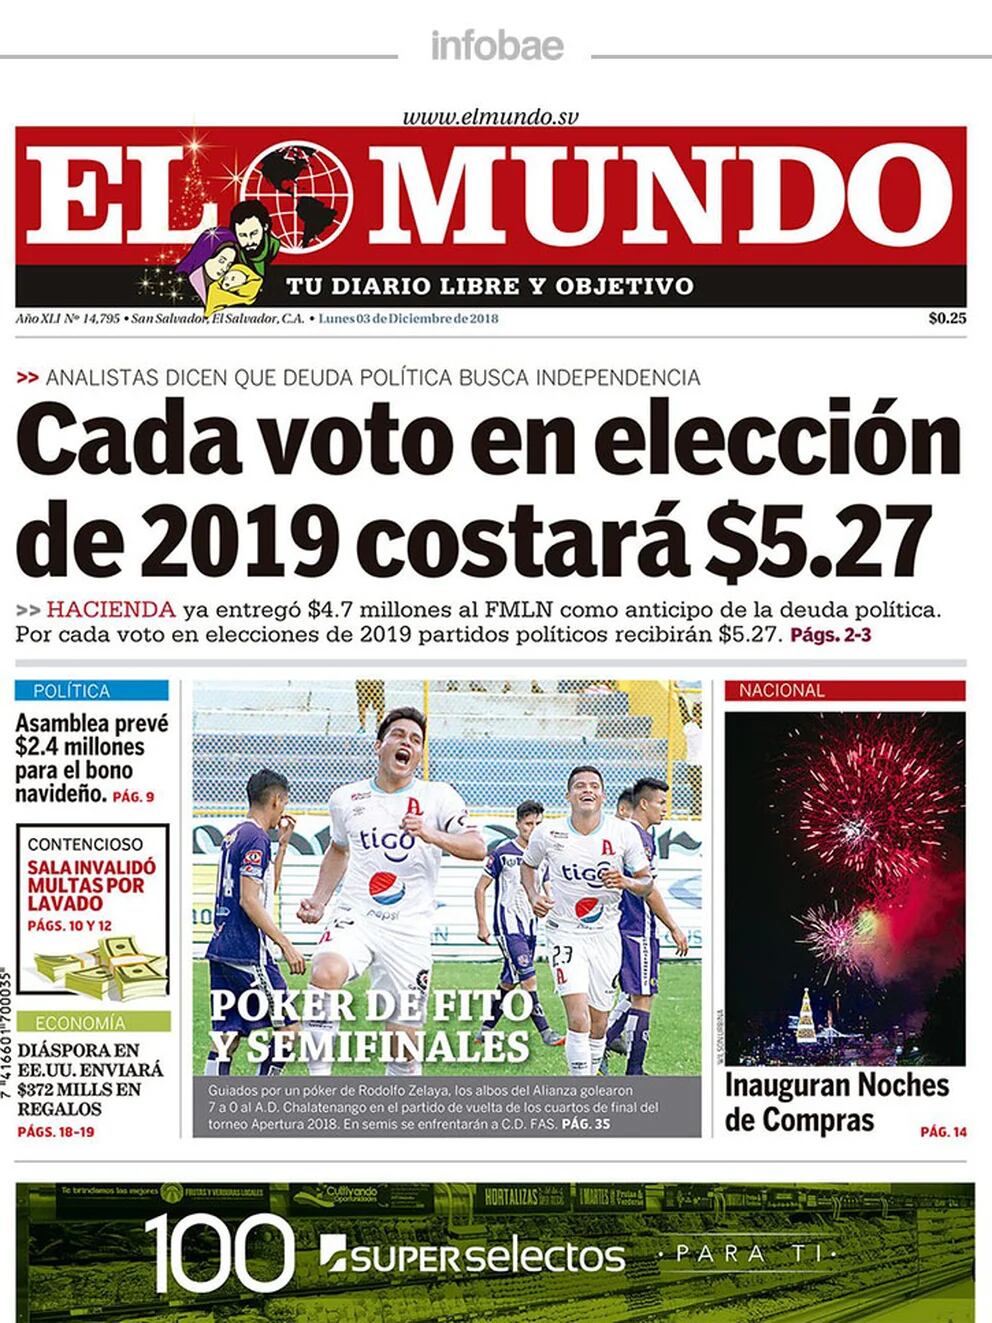 El Mundo El Salvador Lunes 03 De Diciembre De 2018 Infobae 8218